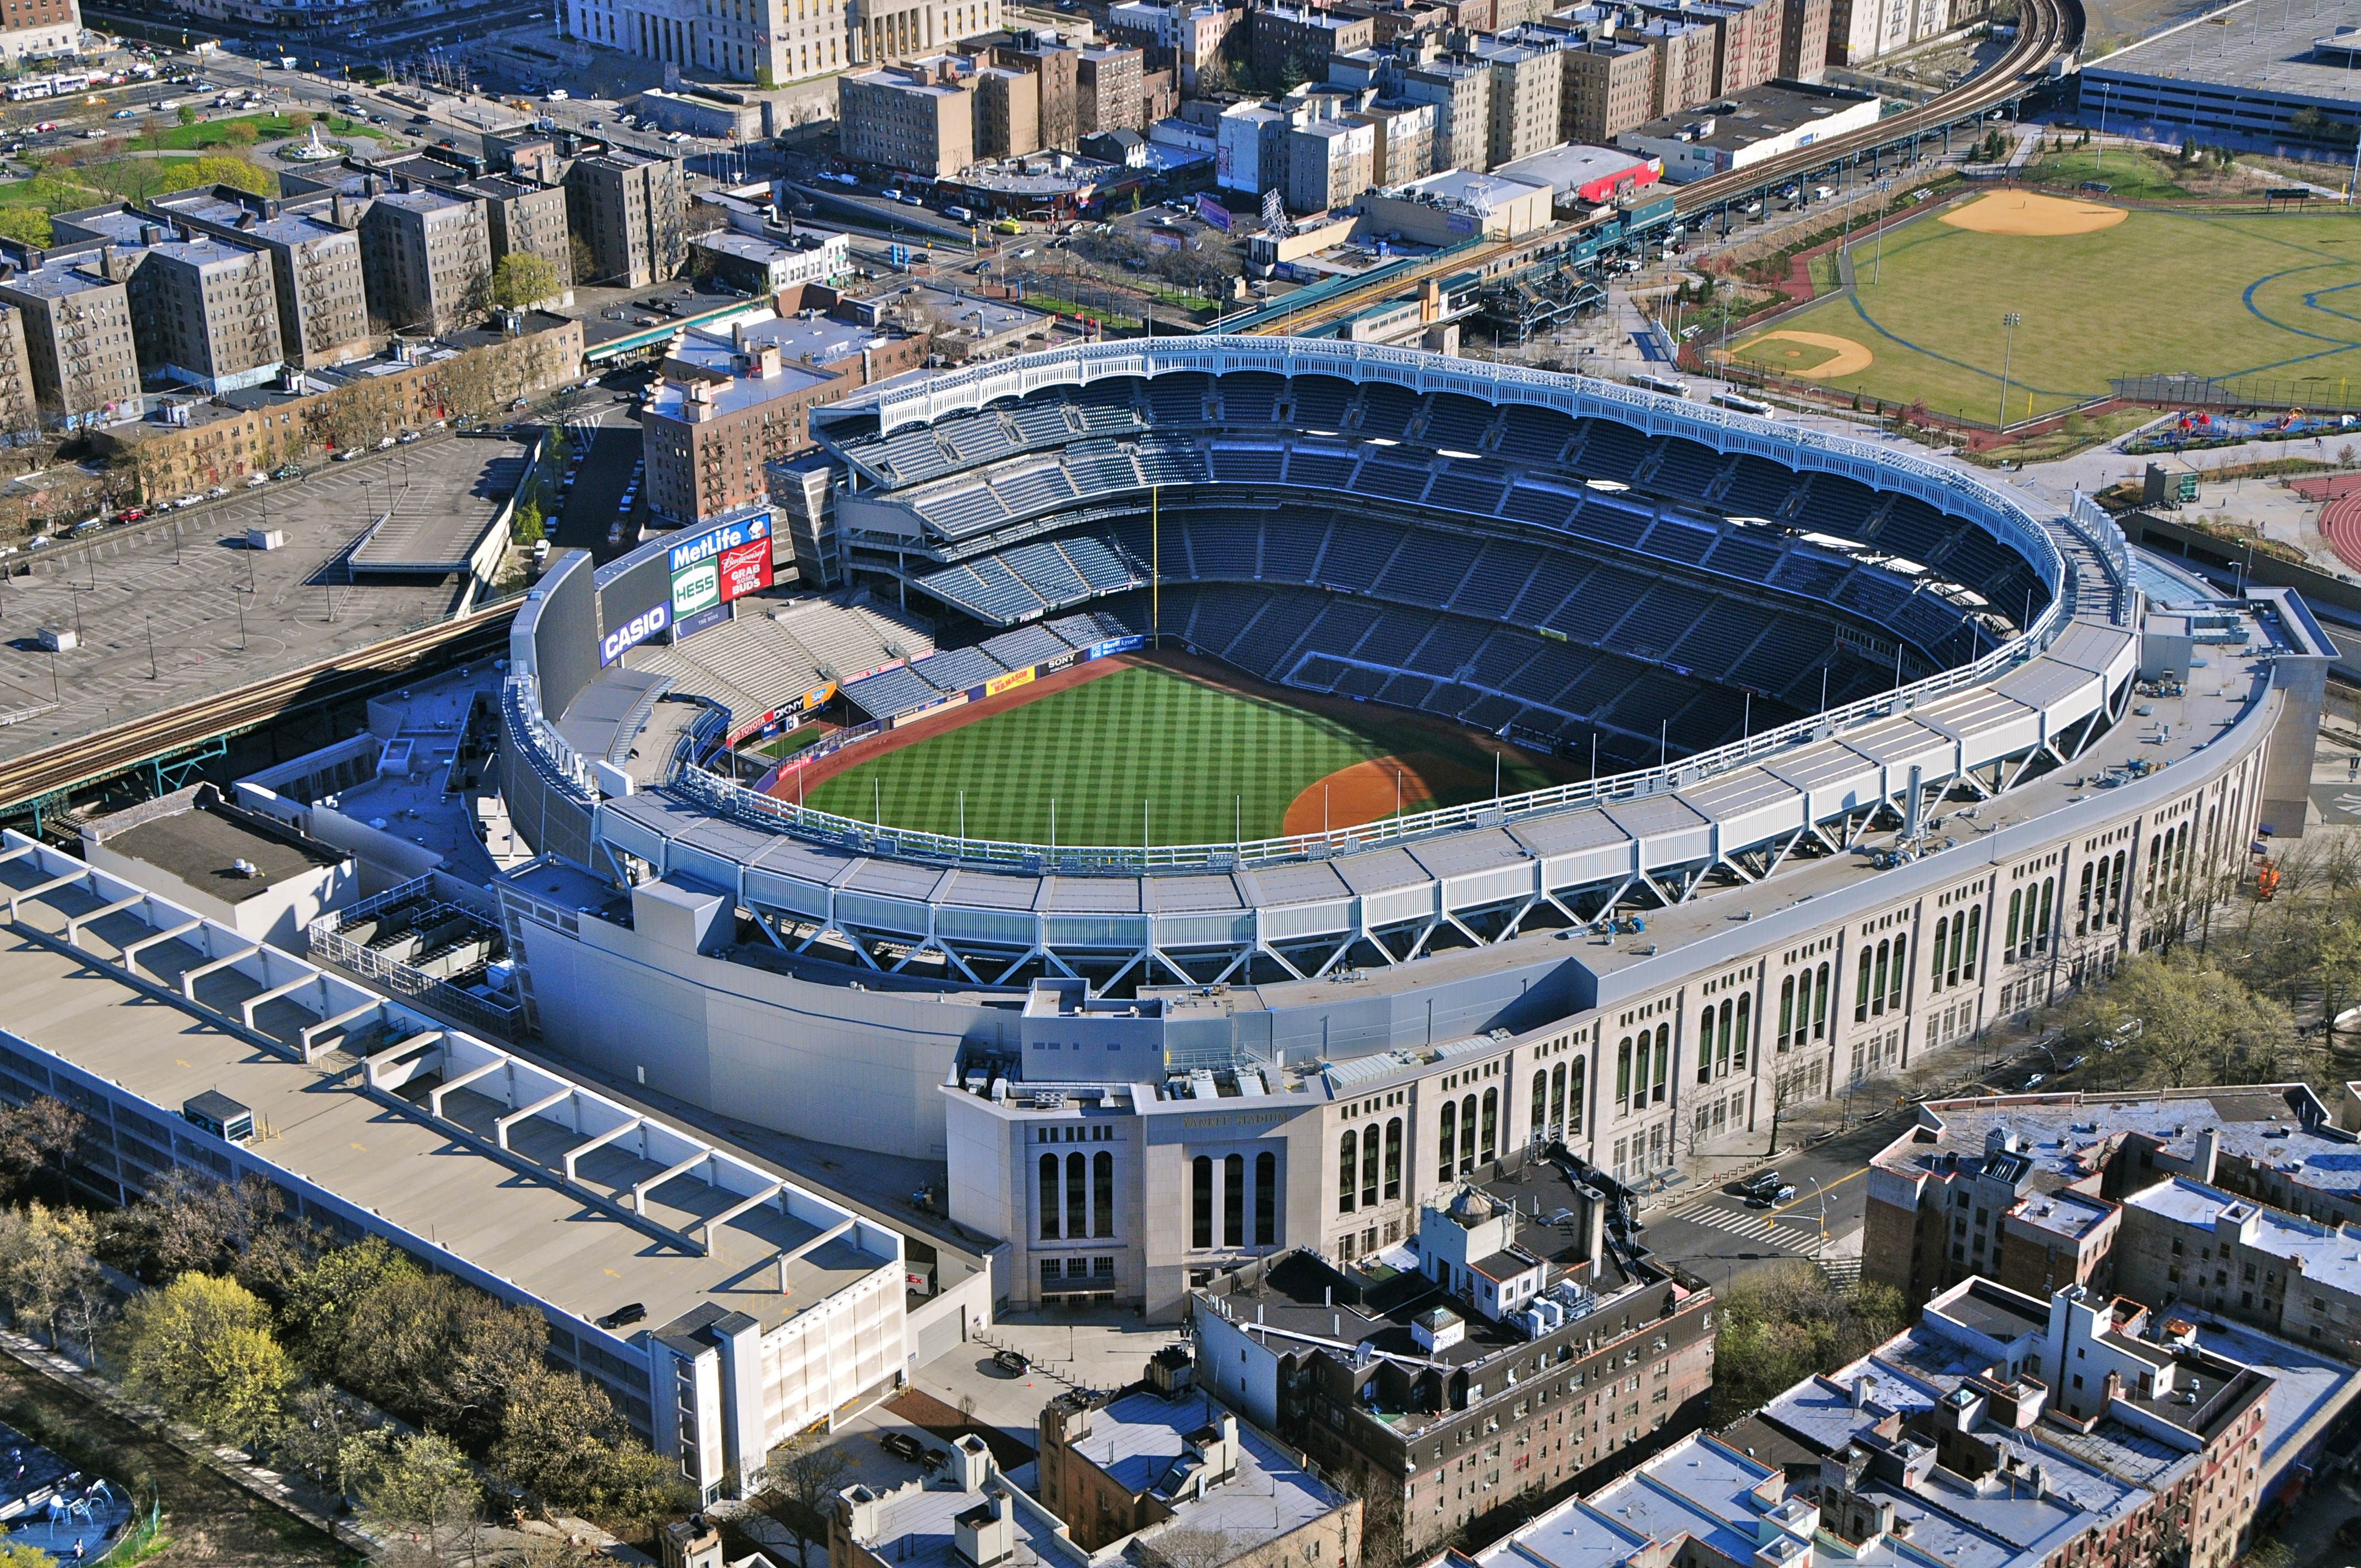 Yankee Stadium Health & Safety